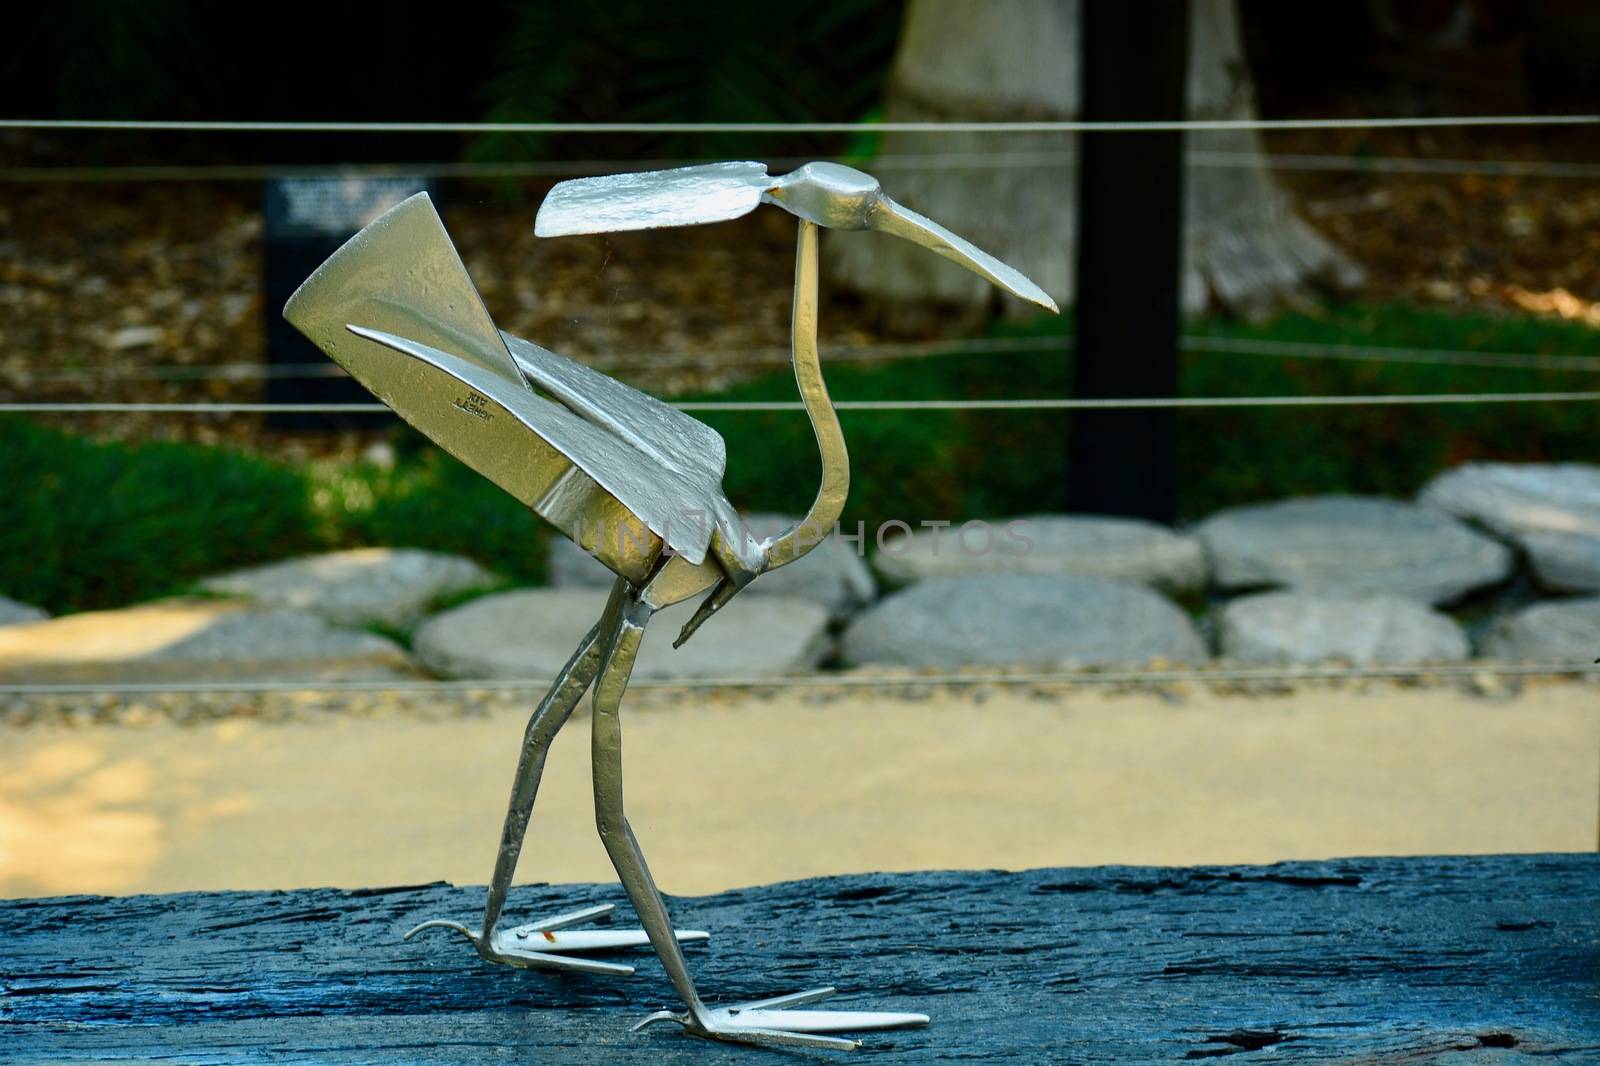 Modern sculpture; concept art; sculpture made of garden tools